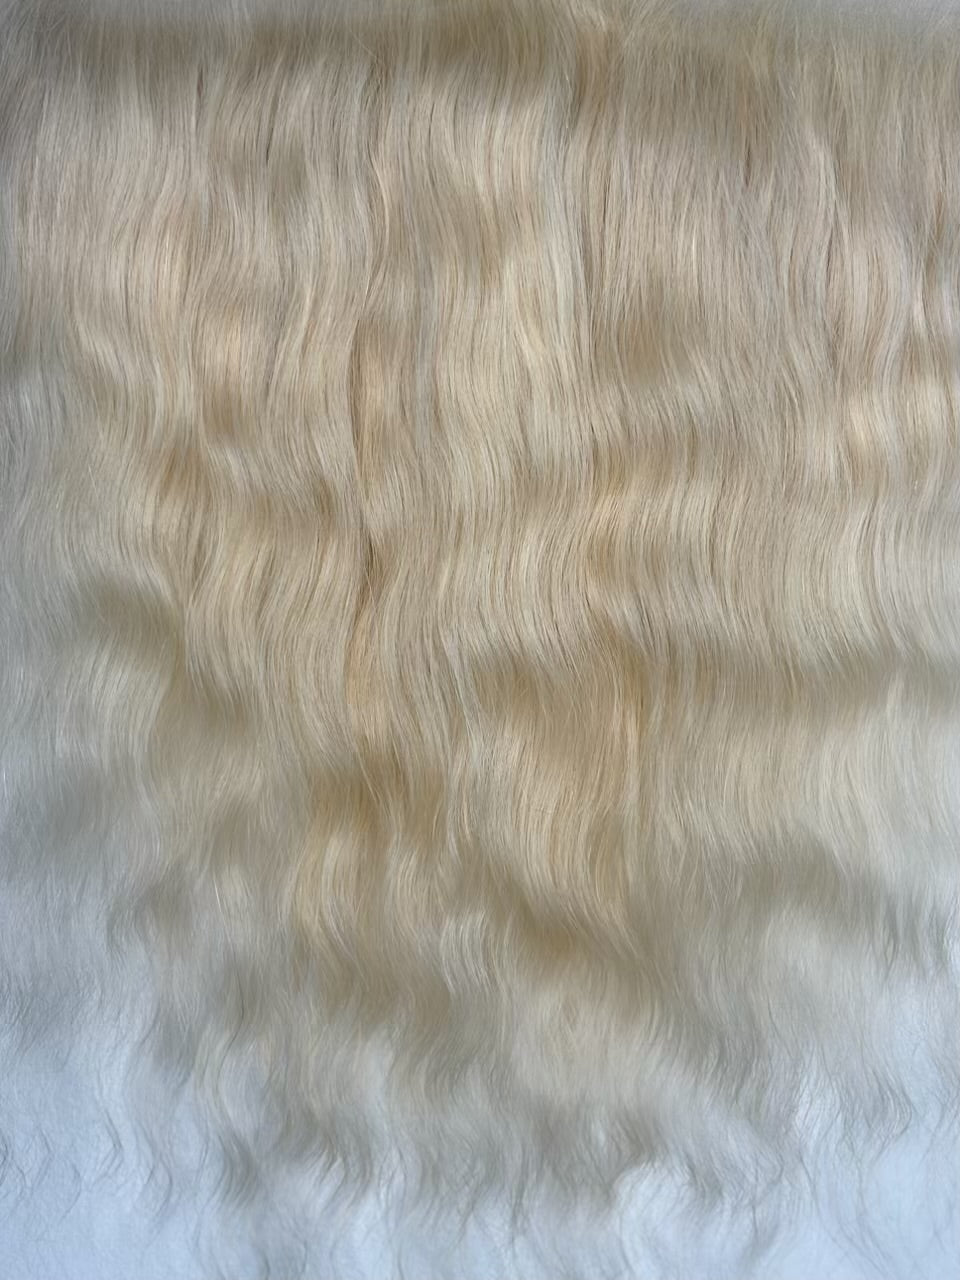 CELEBRITY closure( 5x5) platinum blonde